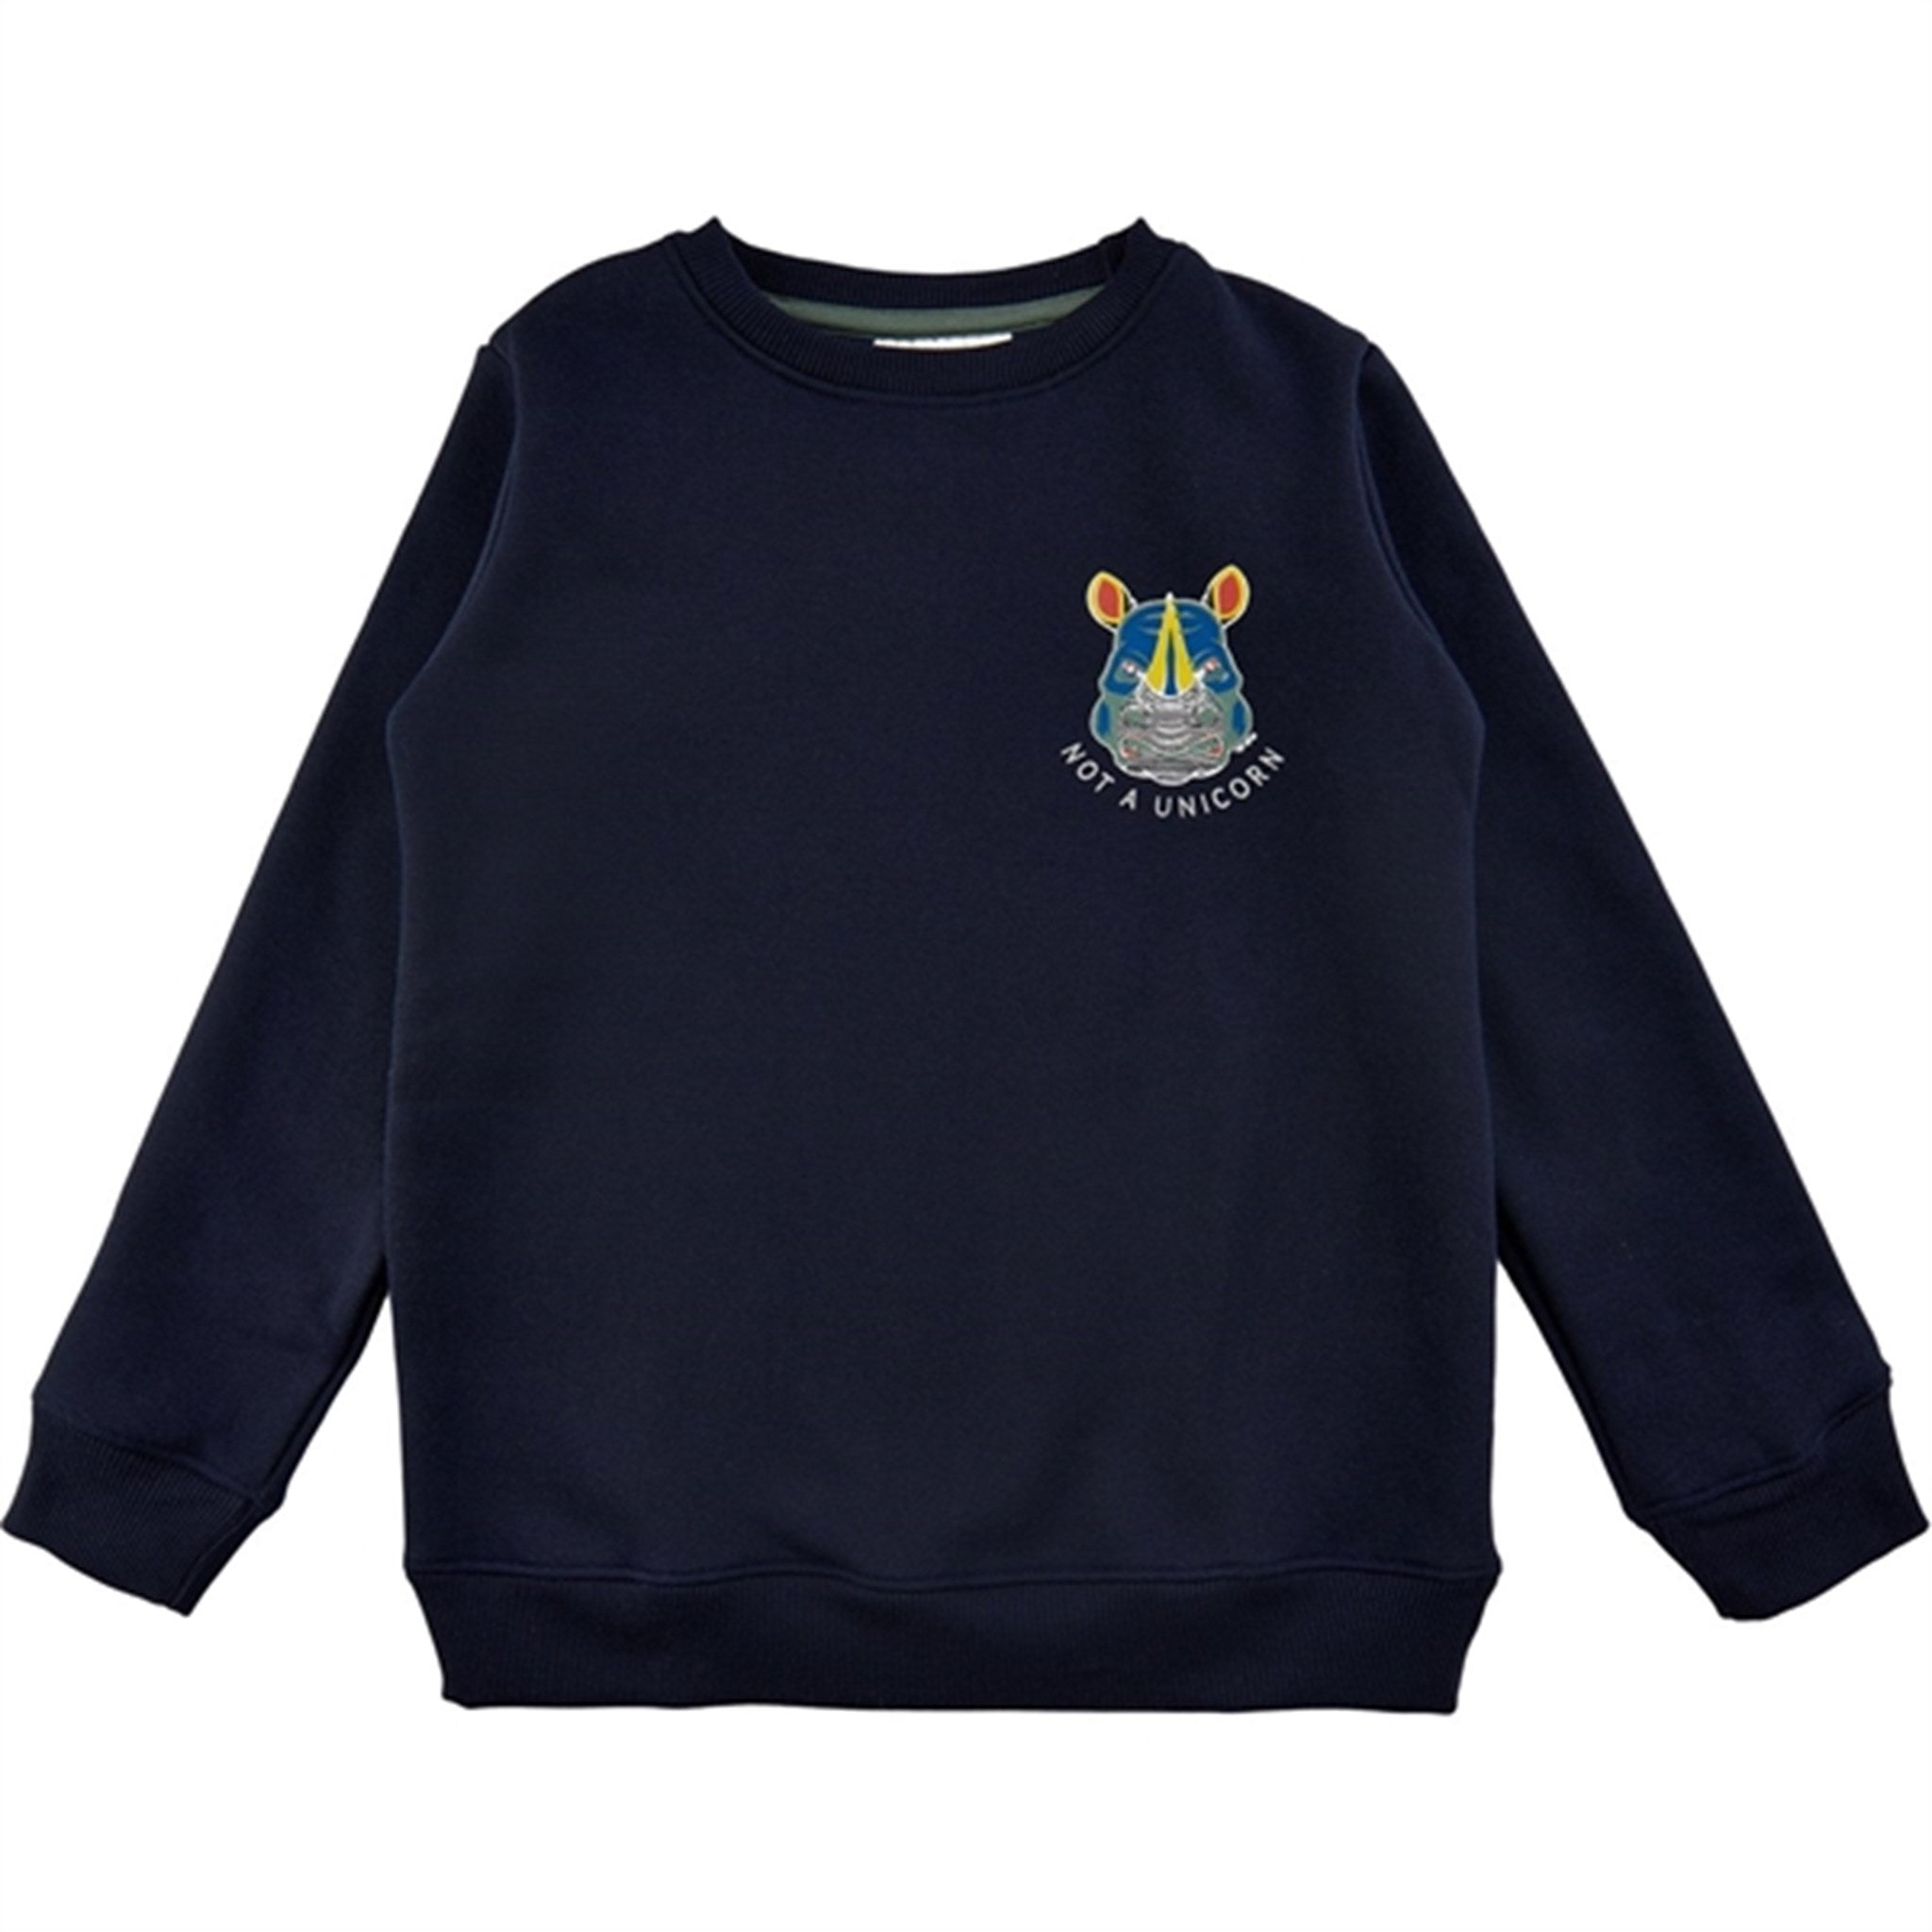 THE NEW Navy Blazer Frons Sweatshirt